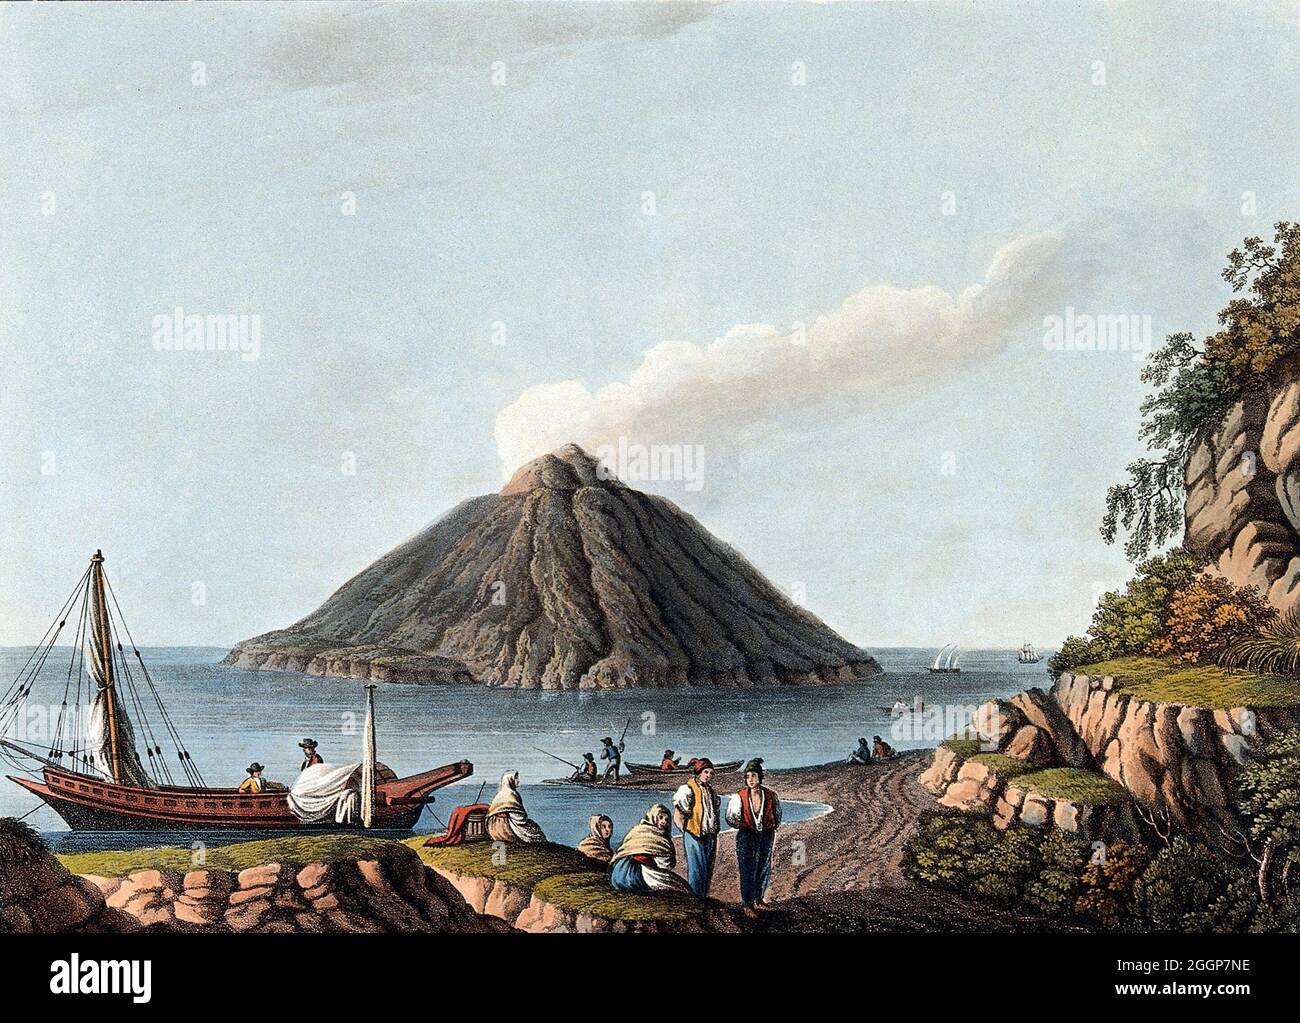 L'île de Stromboli dans les îles éoliennes en Italie, montrant le volcan actif, couleur aquatinte, 1809, après Luigi Mayer. Banque D'Images